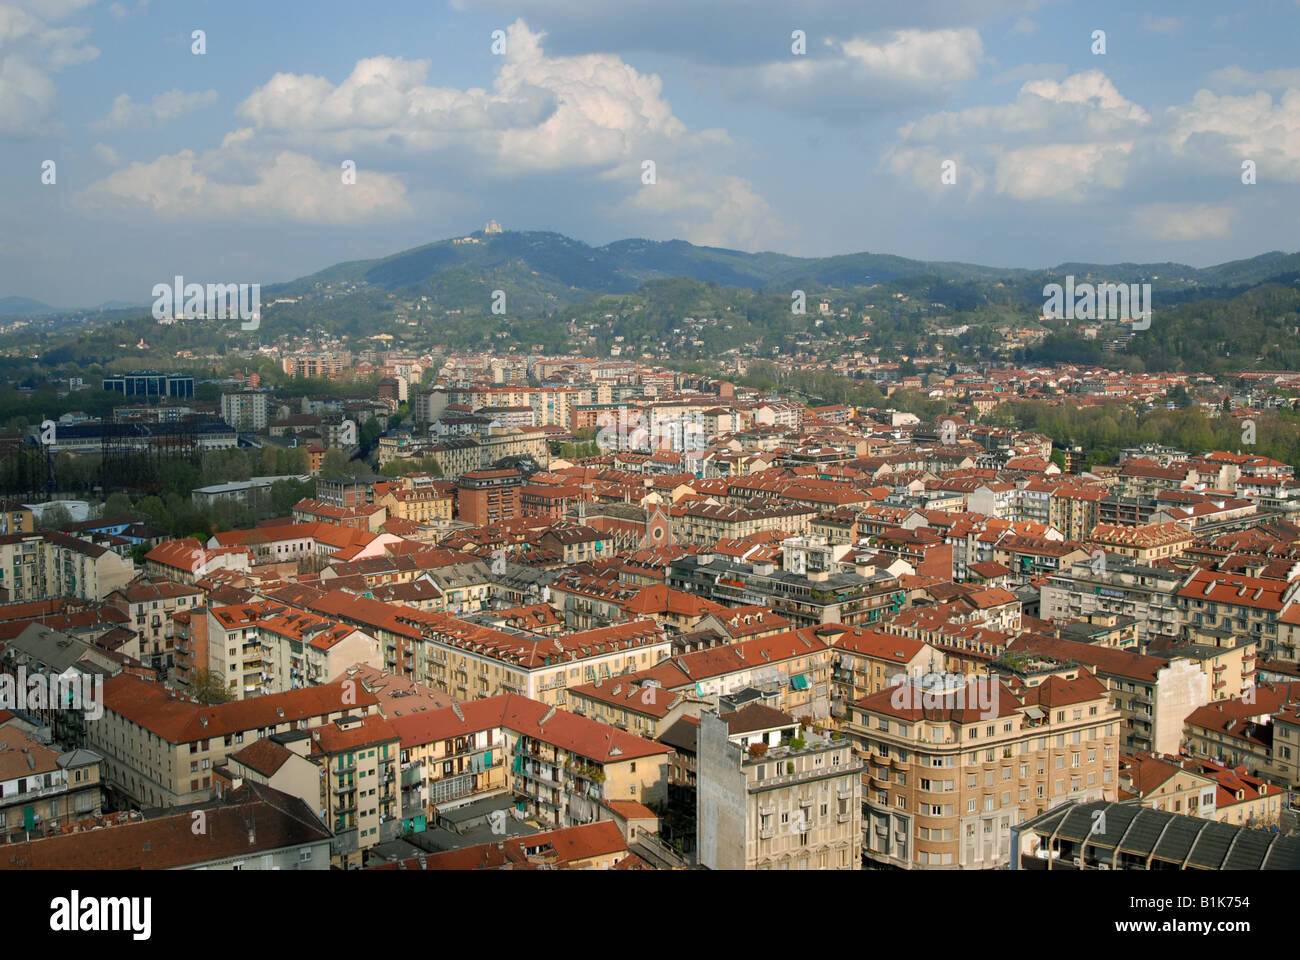 La città di Torino, Piemonte, Italia, con la Basilica di Superga, costruito dall'architetto Filippo Juvarra, sulla collina in background. Foto Stock